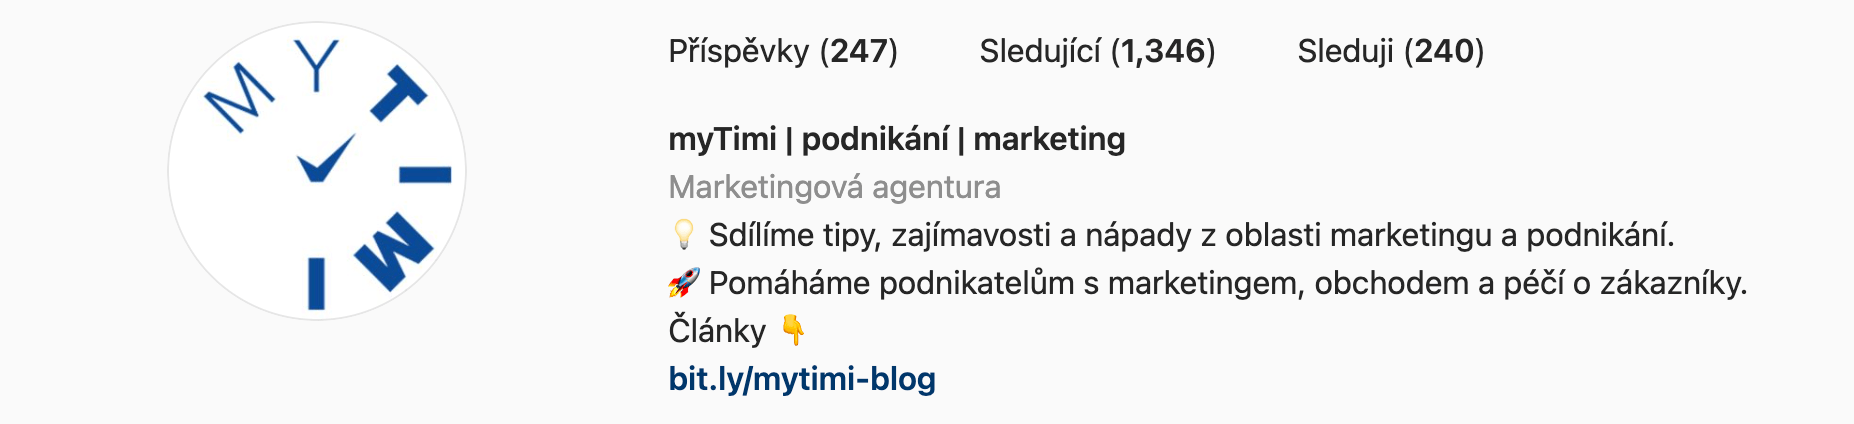 Profil společnosti myTimi bio na instagramu